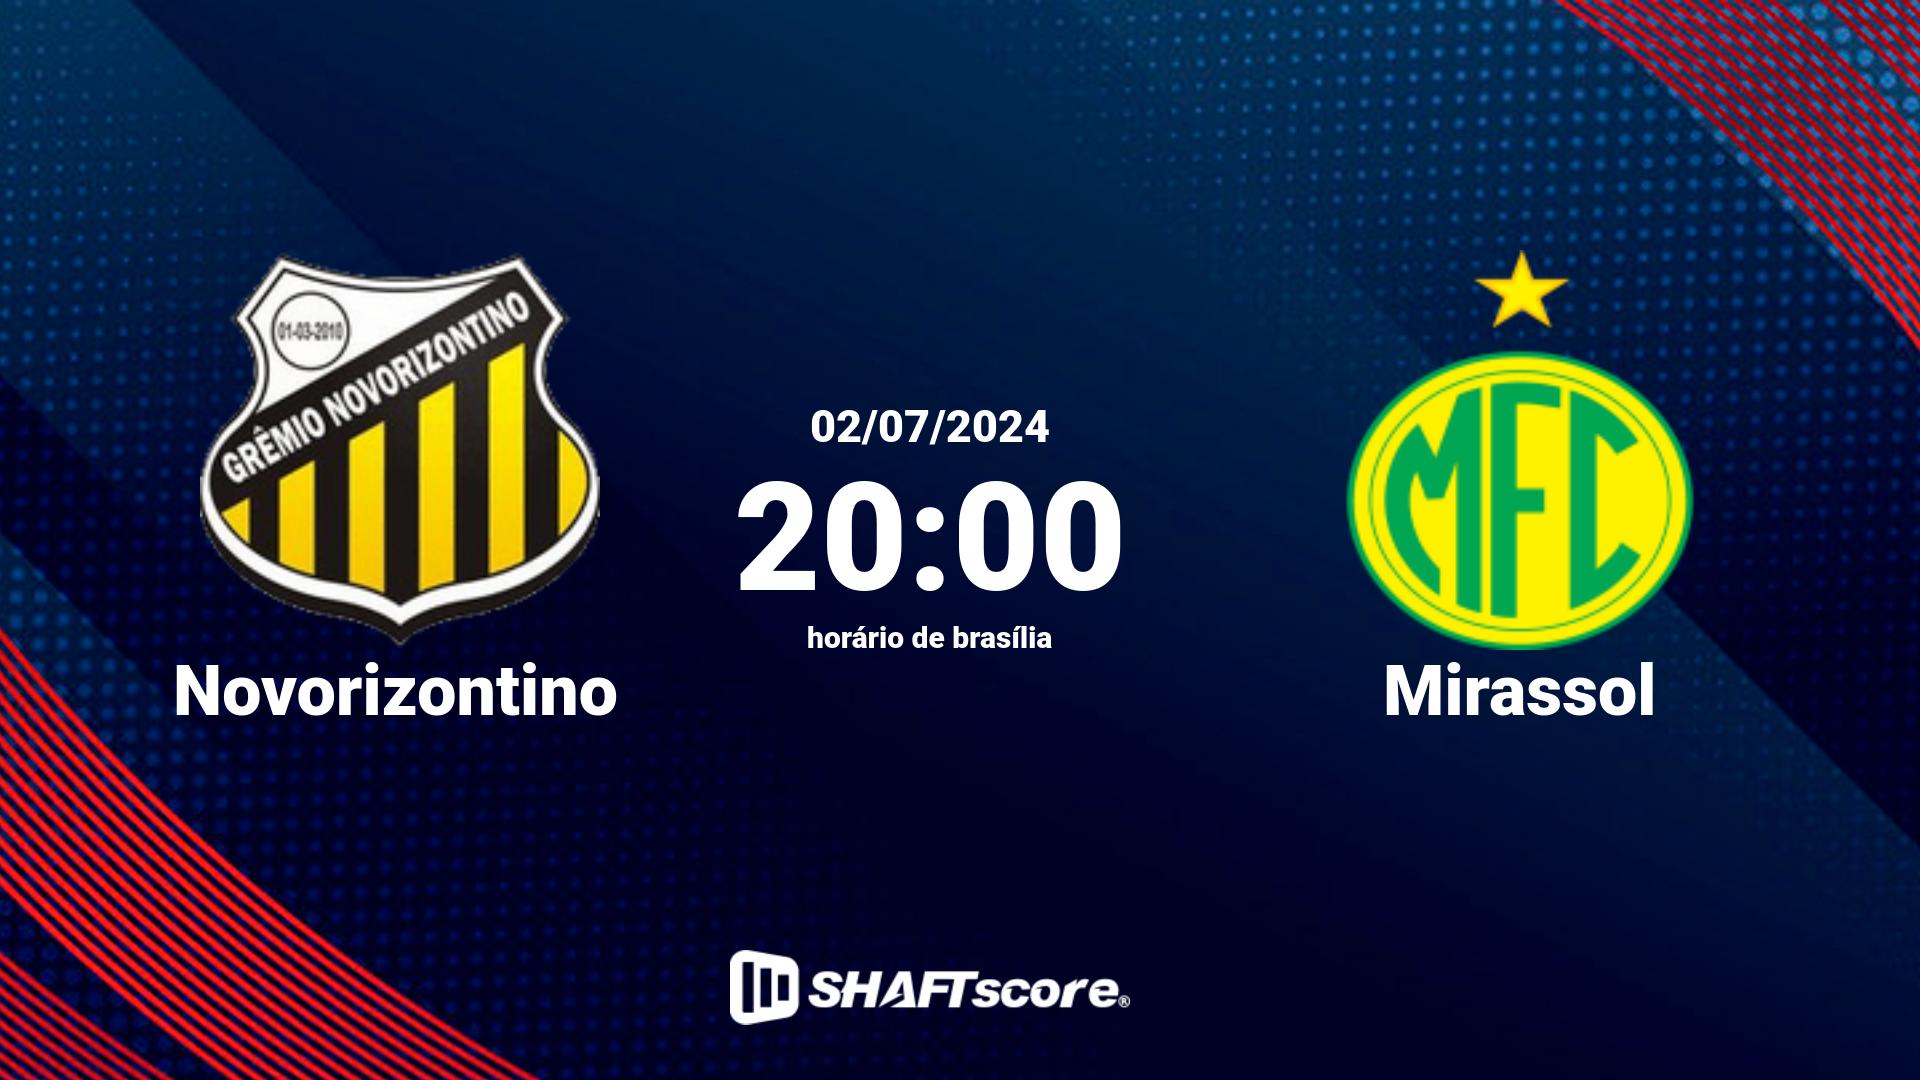 Estatísticas do jogo Novorizontino vs Mirassol 02.07 20:00